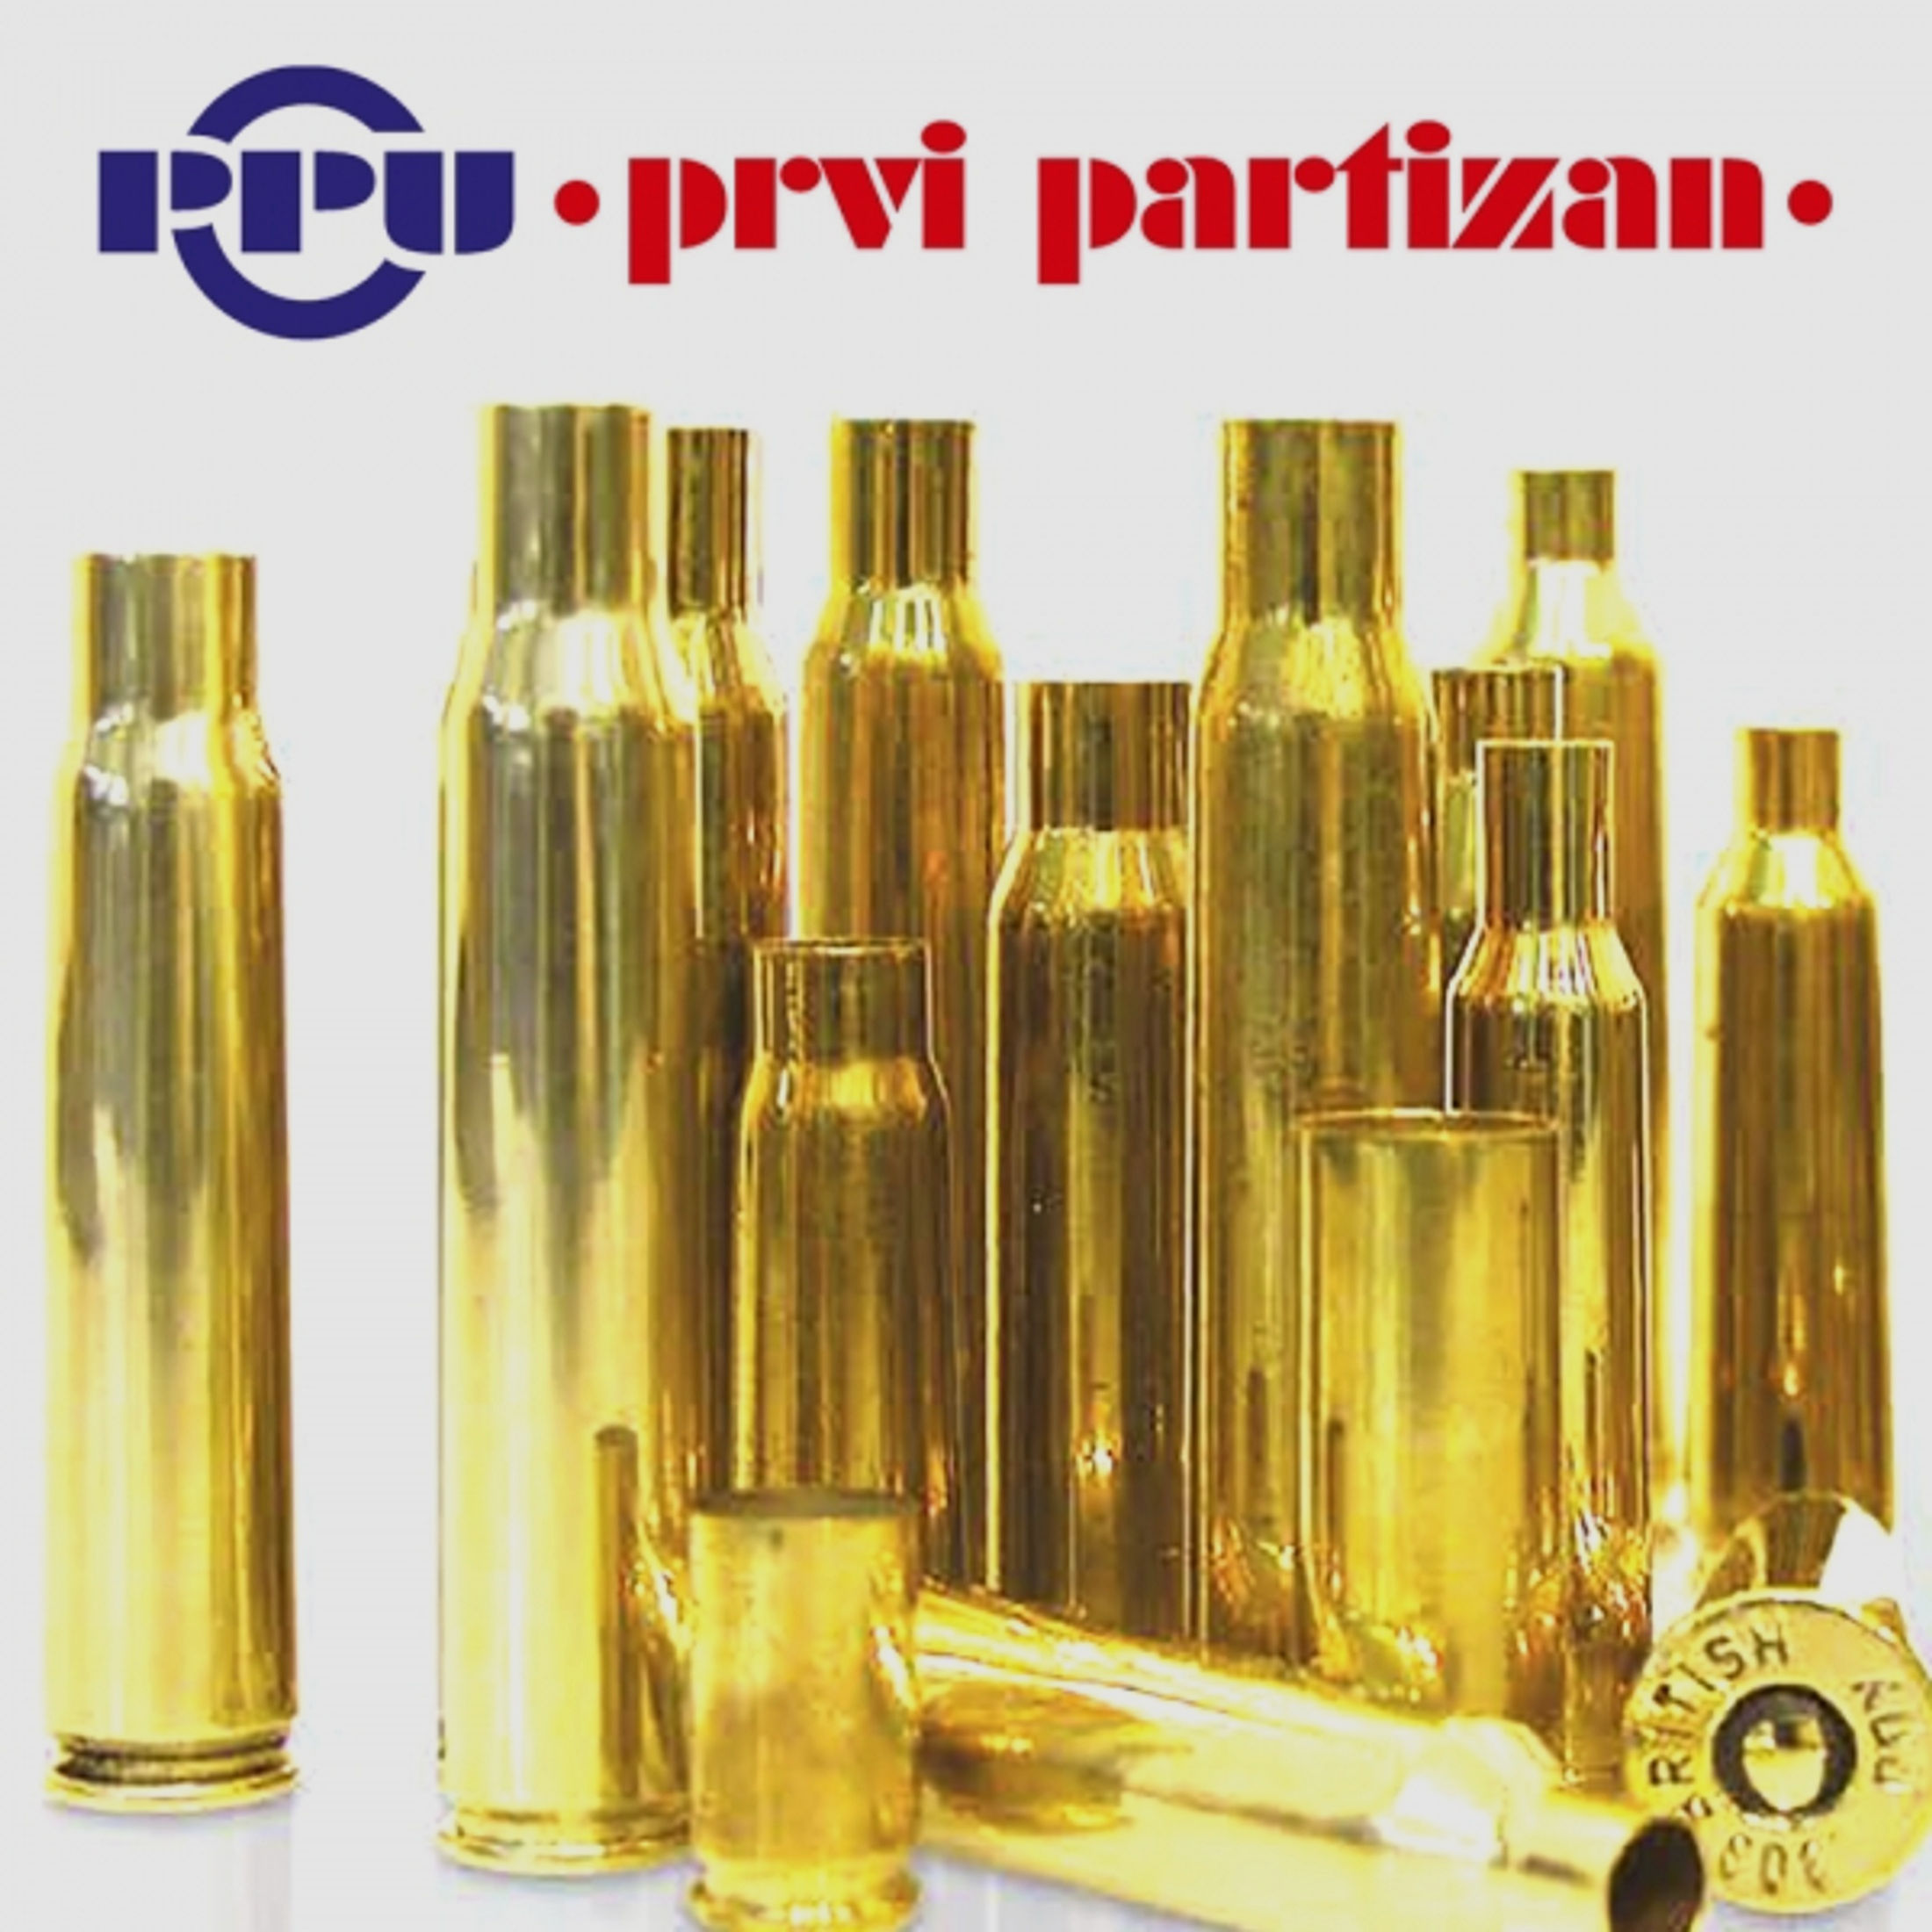 50 Stück NEUE PPU/PrviPartizan Langwaffenhülsen .223 Remington (Boxerzündung)/Unprimed Brass #C132